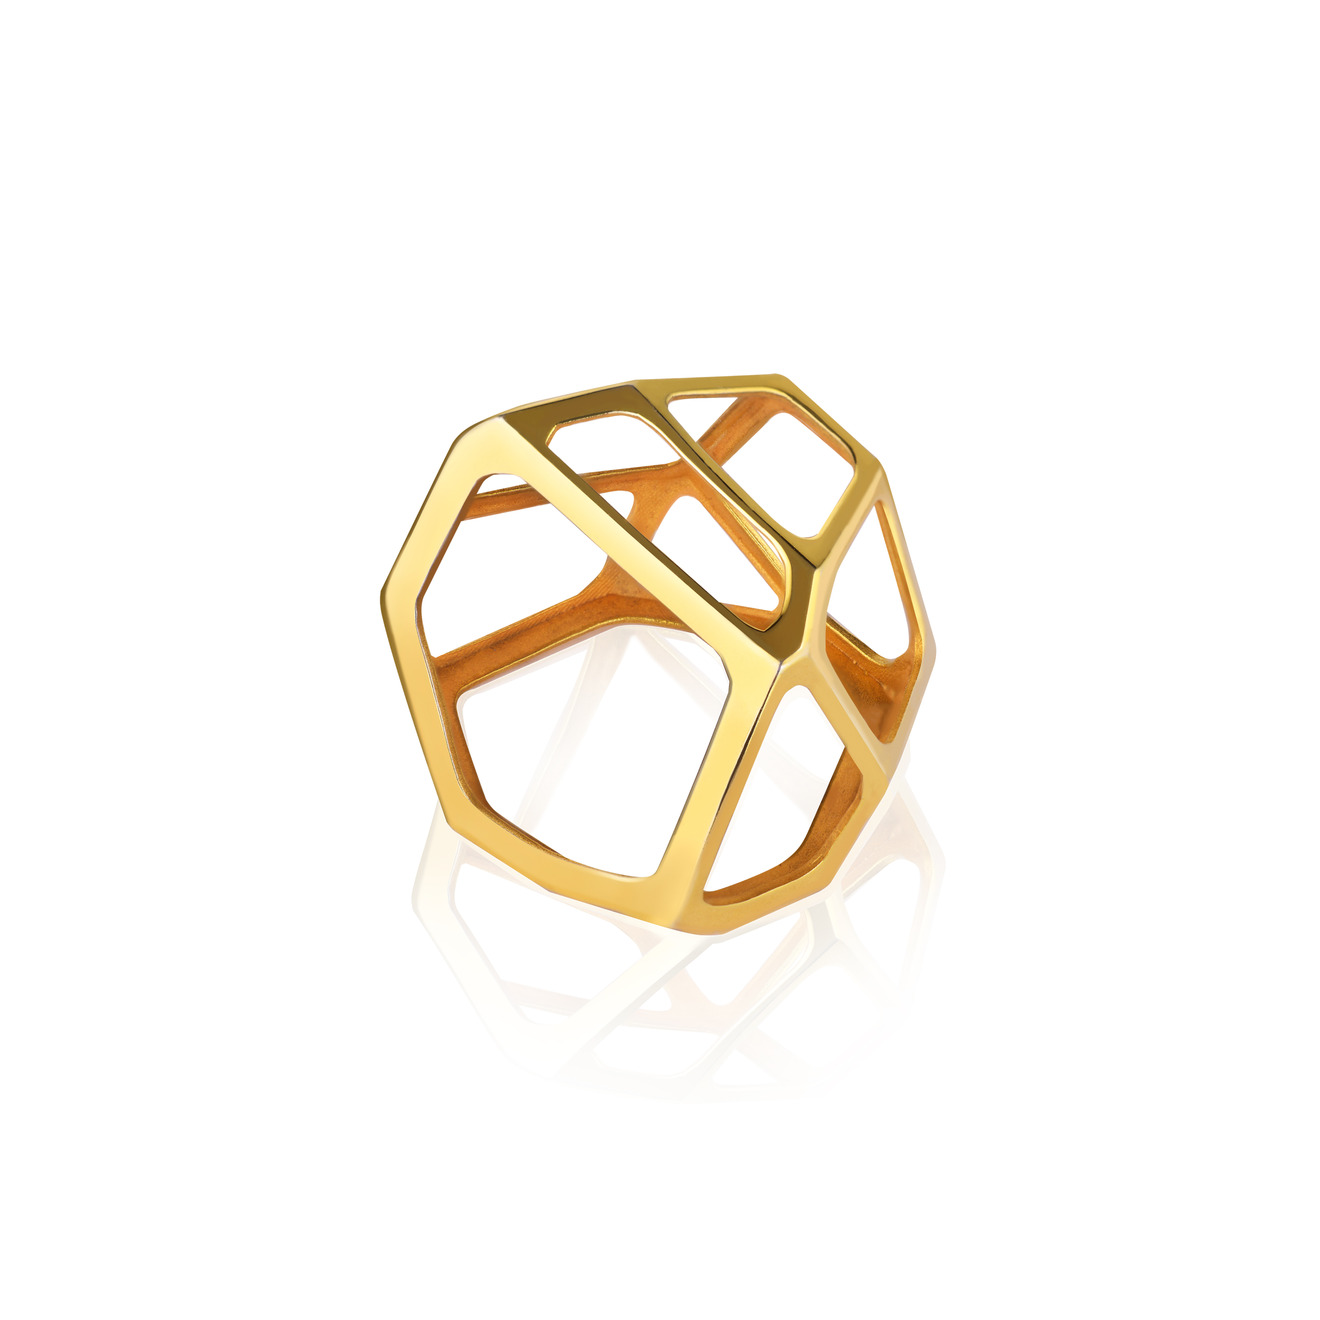 Vertigo Jewellery Lab Позолоченное безразмерное кольцо-подвеска из серебра “CELL MONO” vertigo jewellery lab кольцо сleoptr из серебра